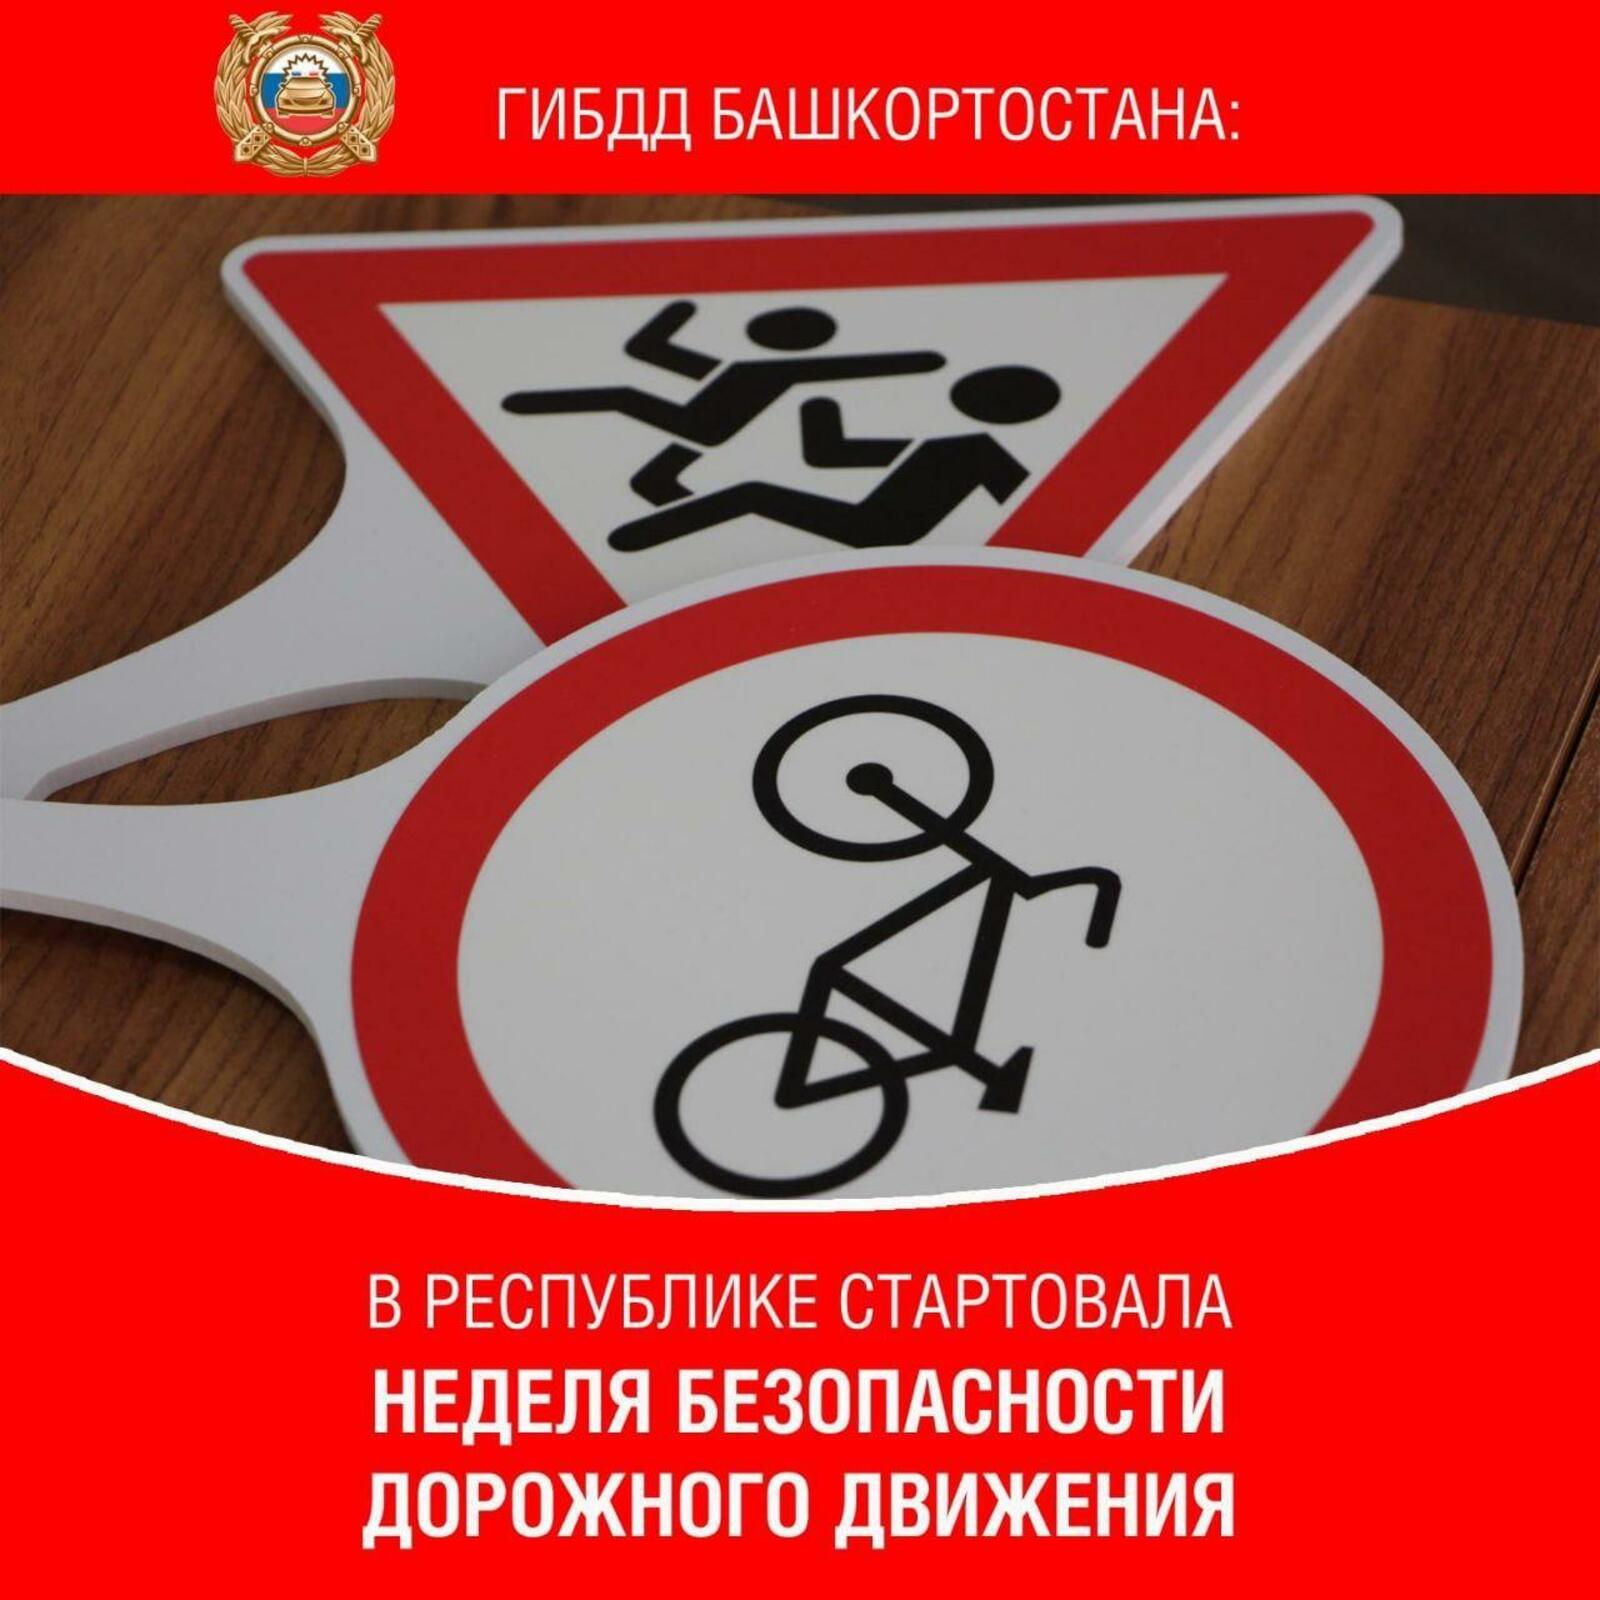 Республика Башкортостан принимает участие во Всероссийской неделе безопасности дорожного движения